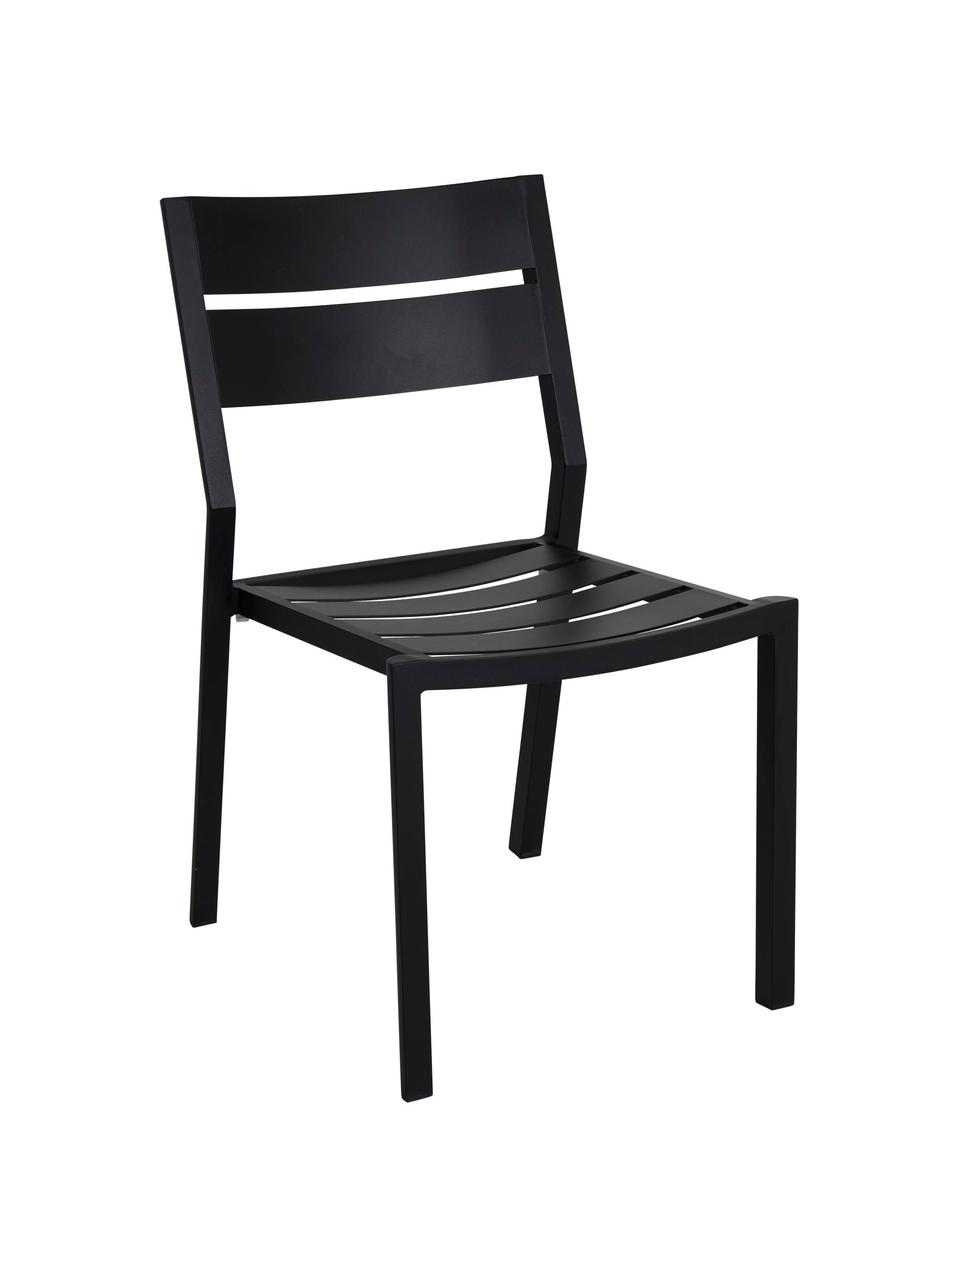 Krzesło ogrodowe Delia, Aluminium malowane proszkowo, Czarny, S 48 x G 55 cm